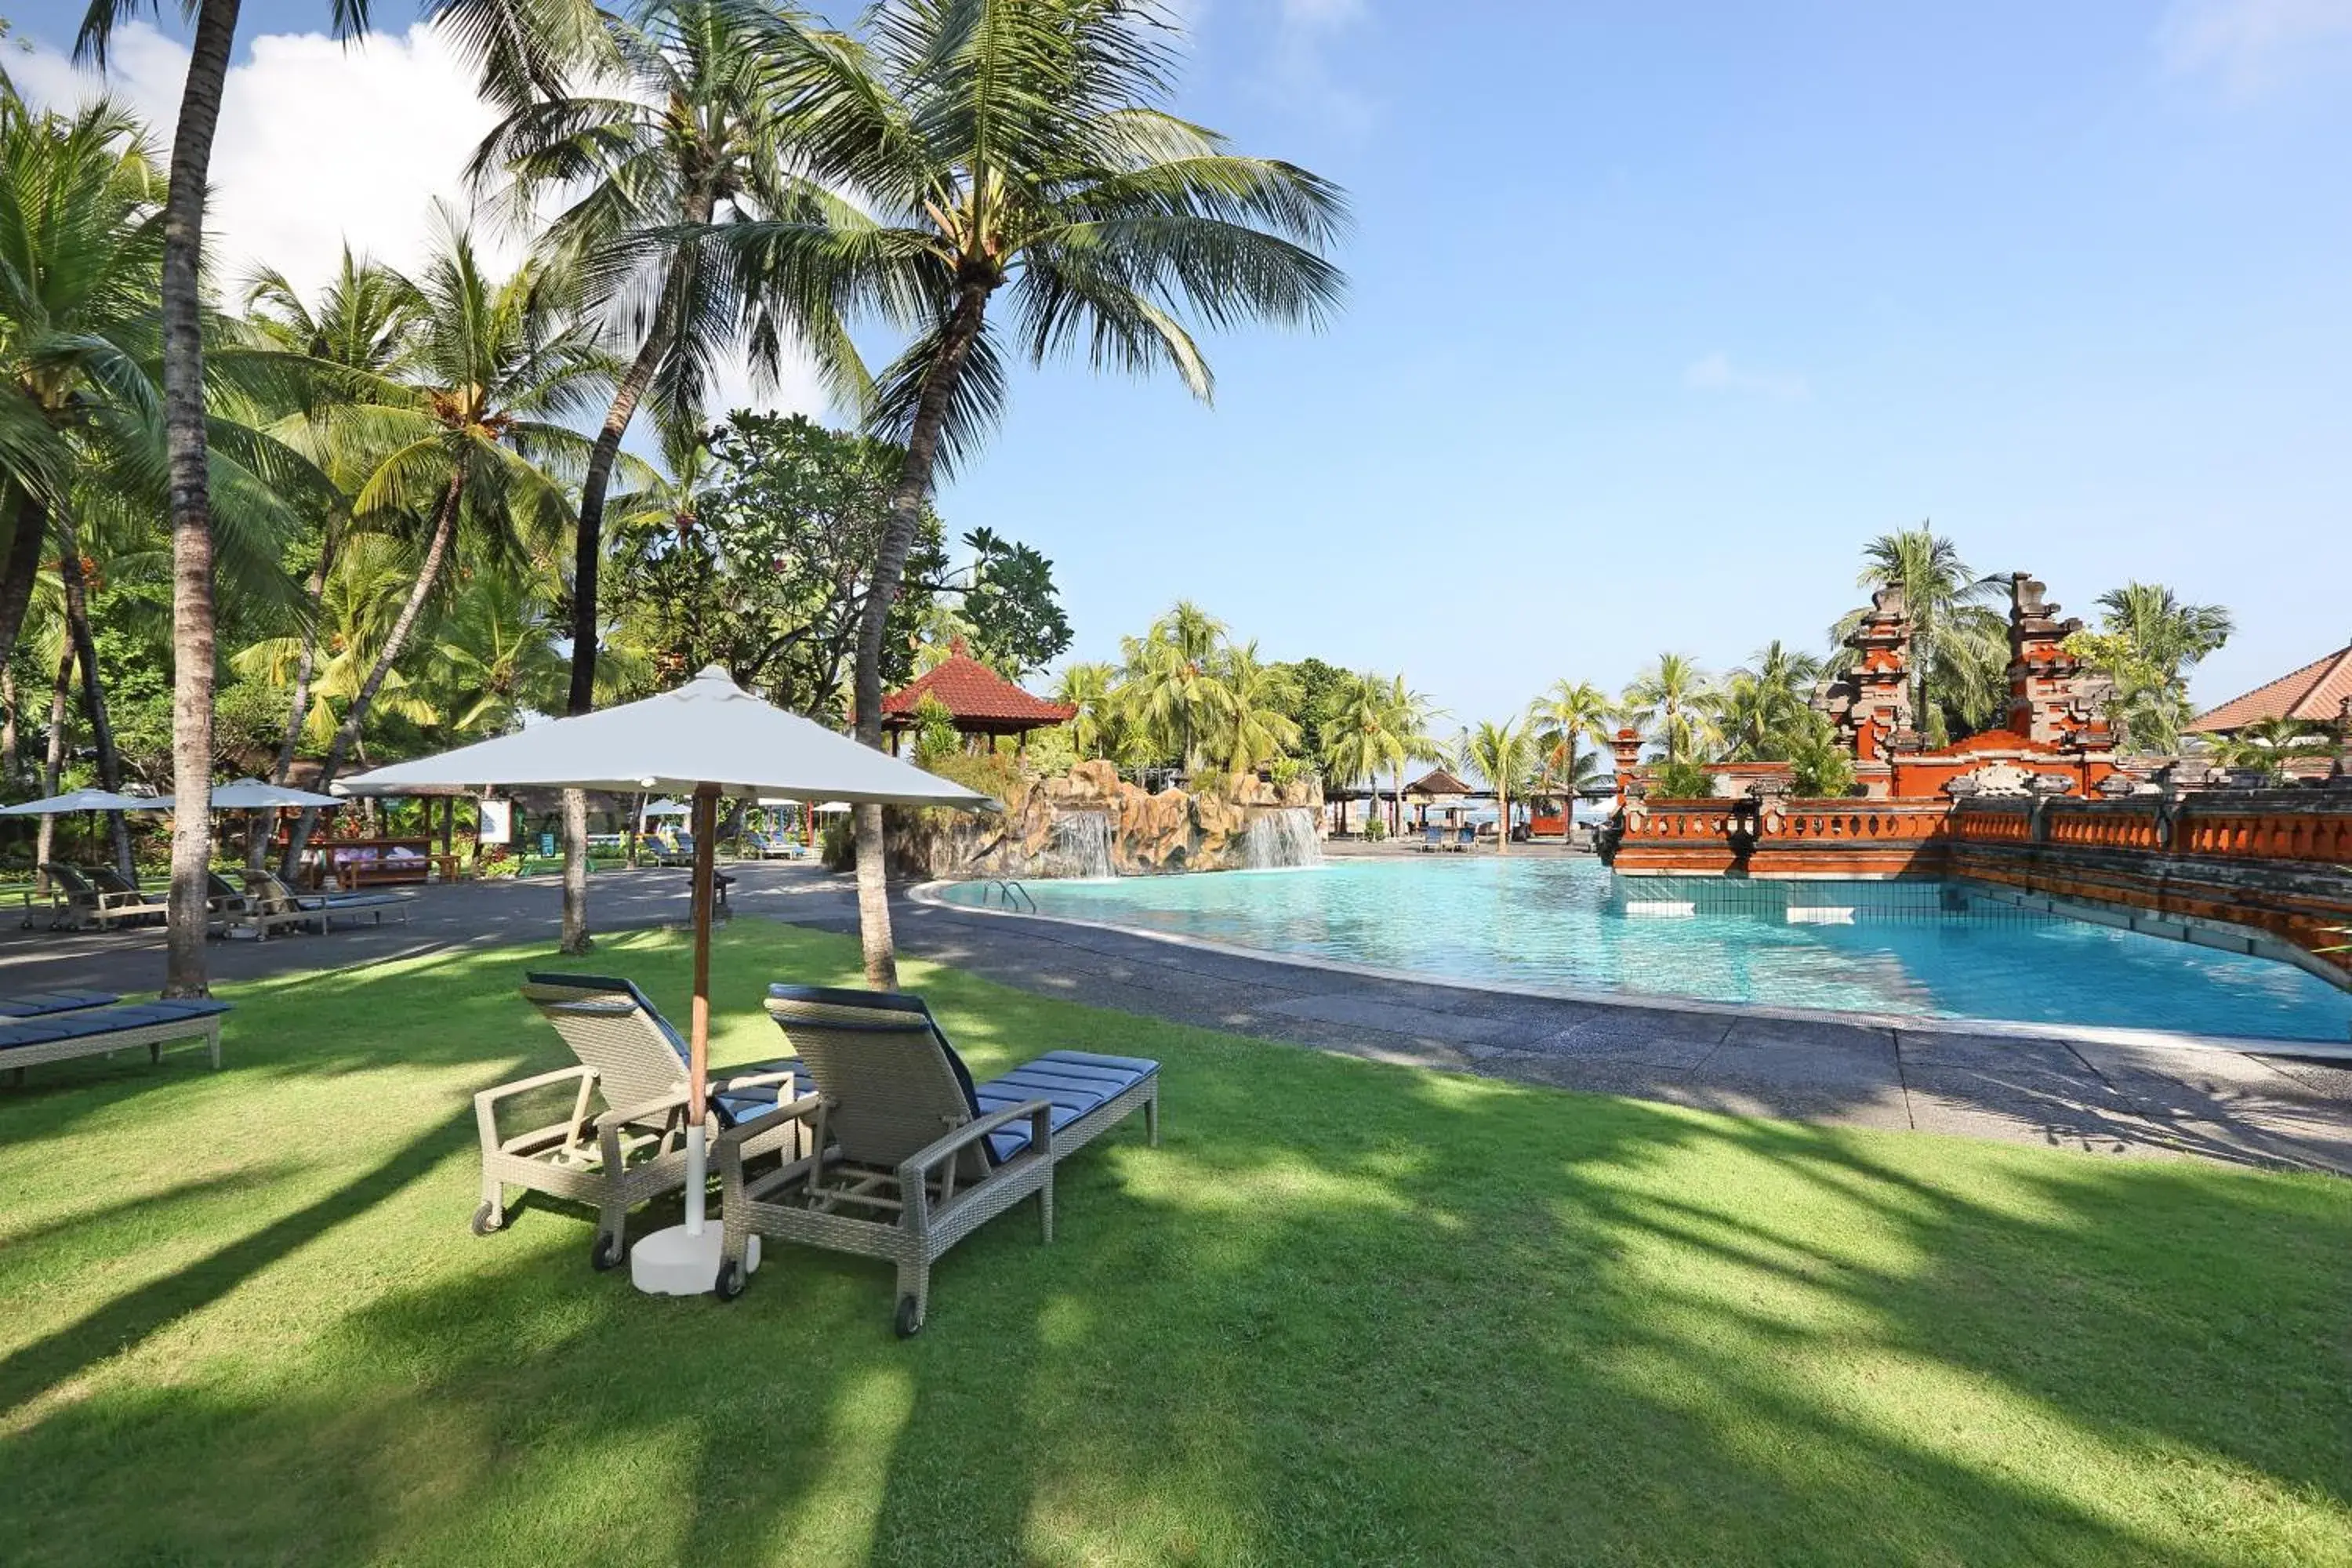 Swimming Pool in Bintang Bali Resort